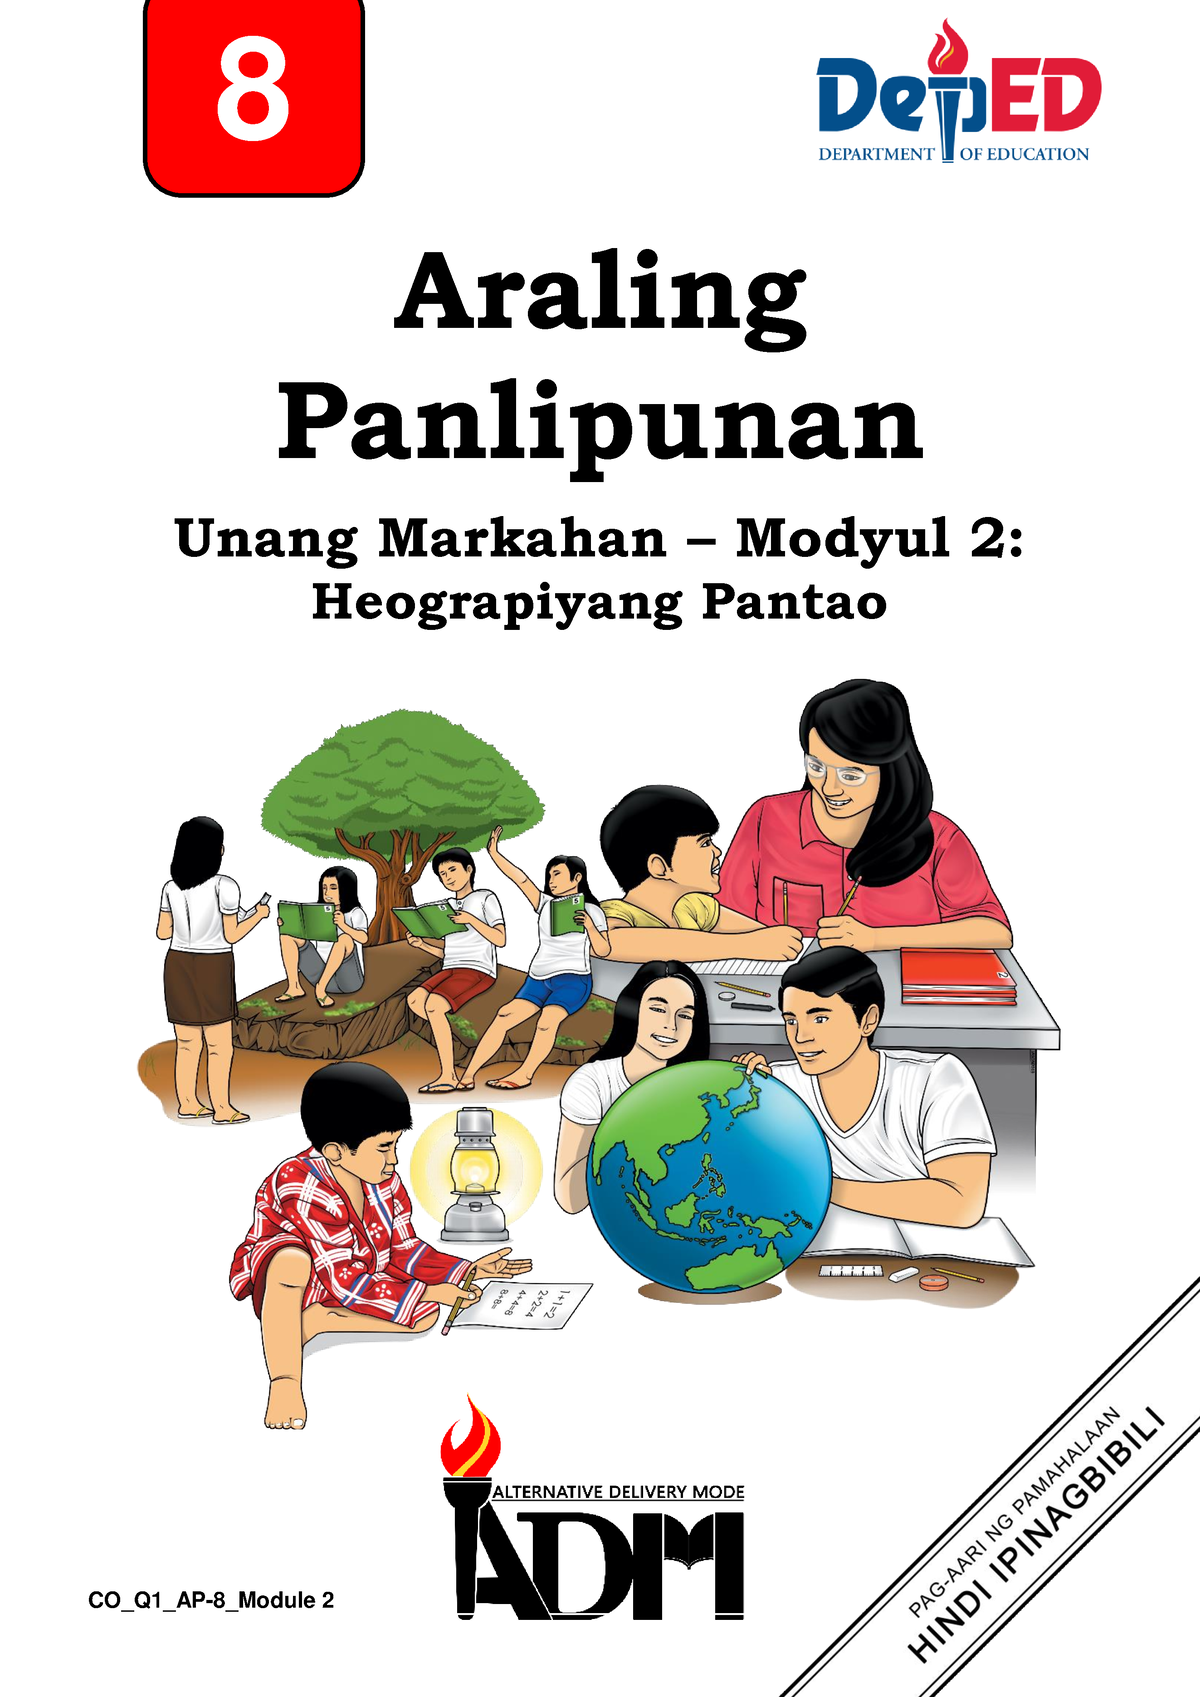 Araling Panlipunan 8 Quarter 1 Module 2 Heograpiyang Pantao V2 - 8